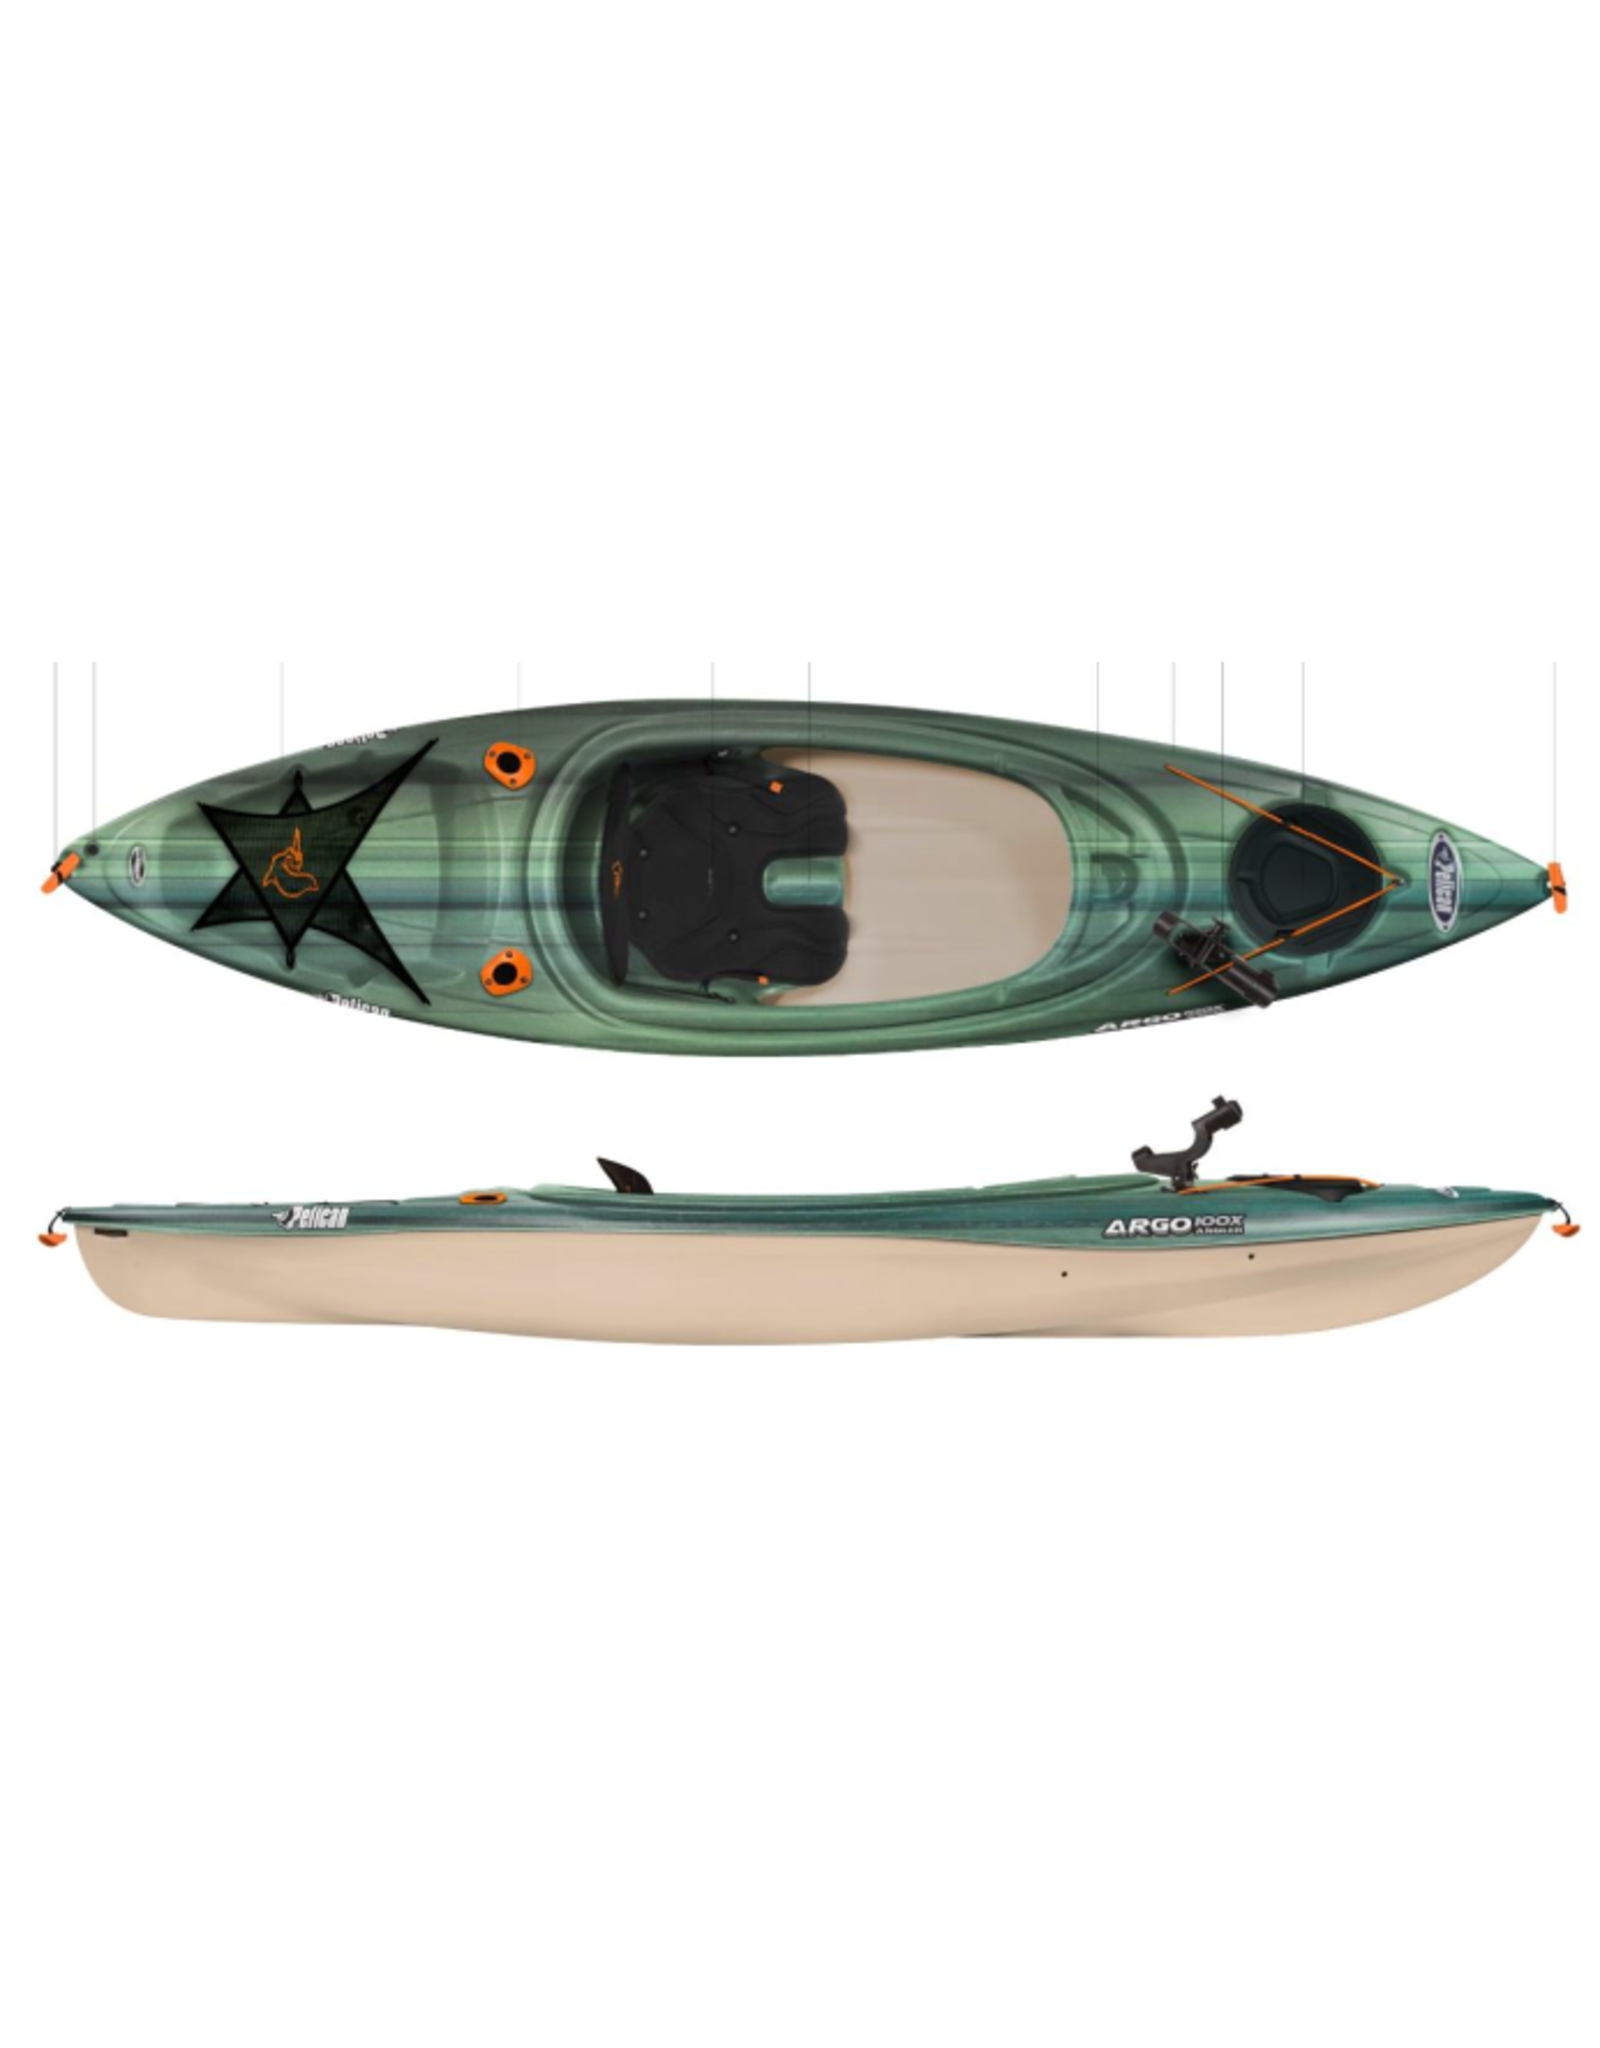 Pelican Pelican kayak Argo 100X Angler Fade Green/Sand